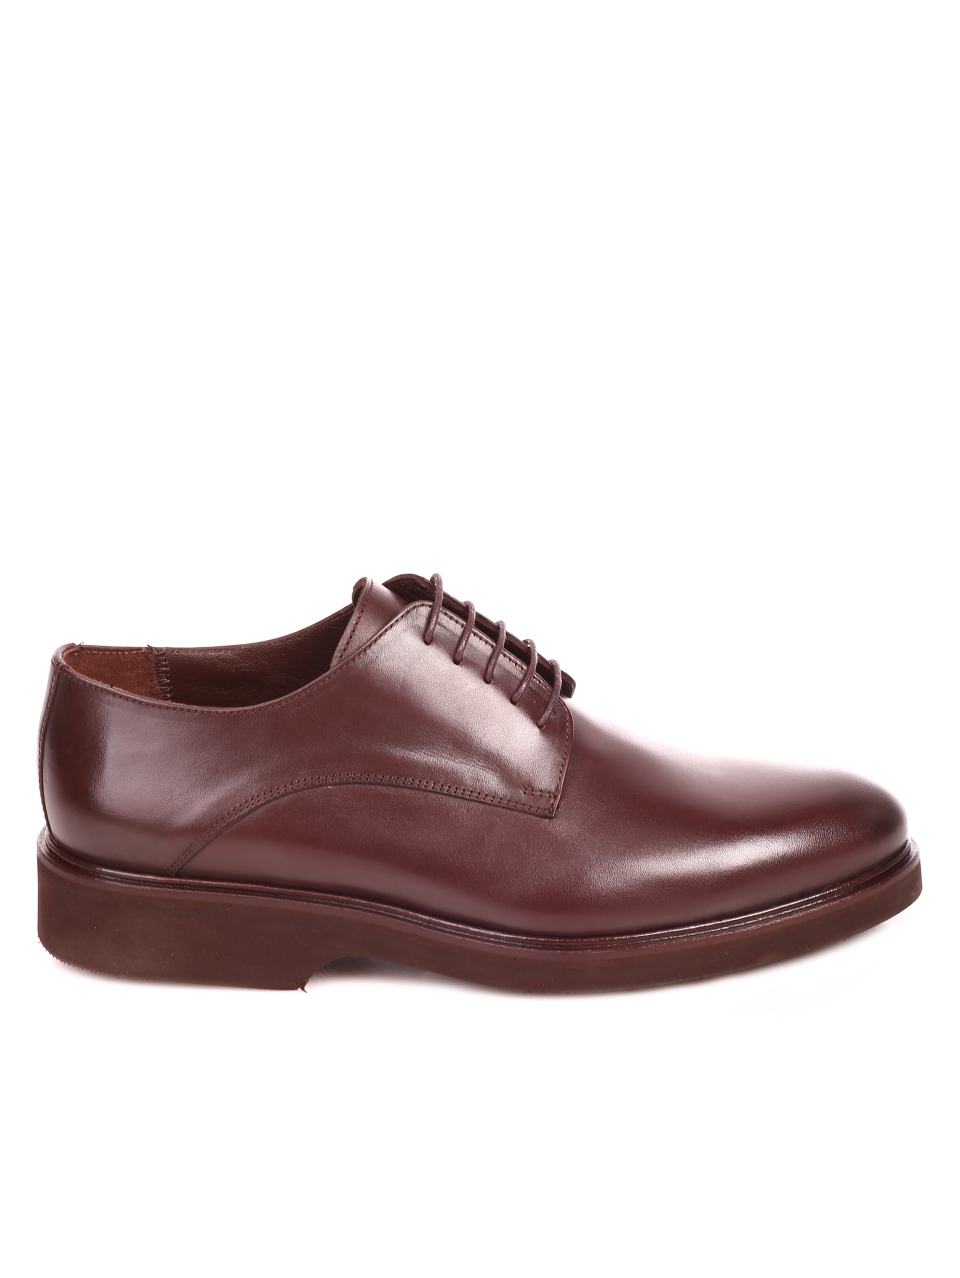 Елегантни мъжки обувки от естествена кожа 7AT-21856 brown